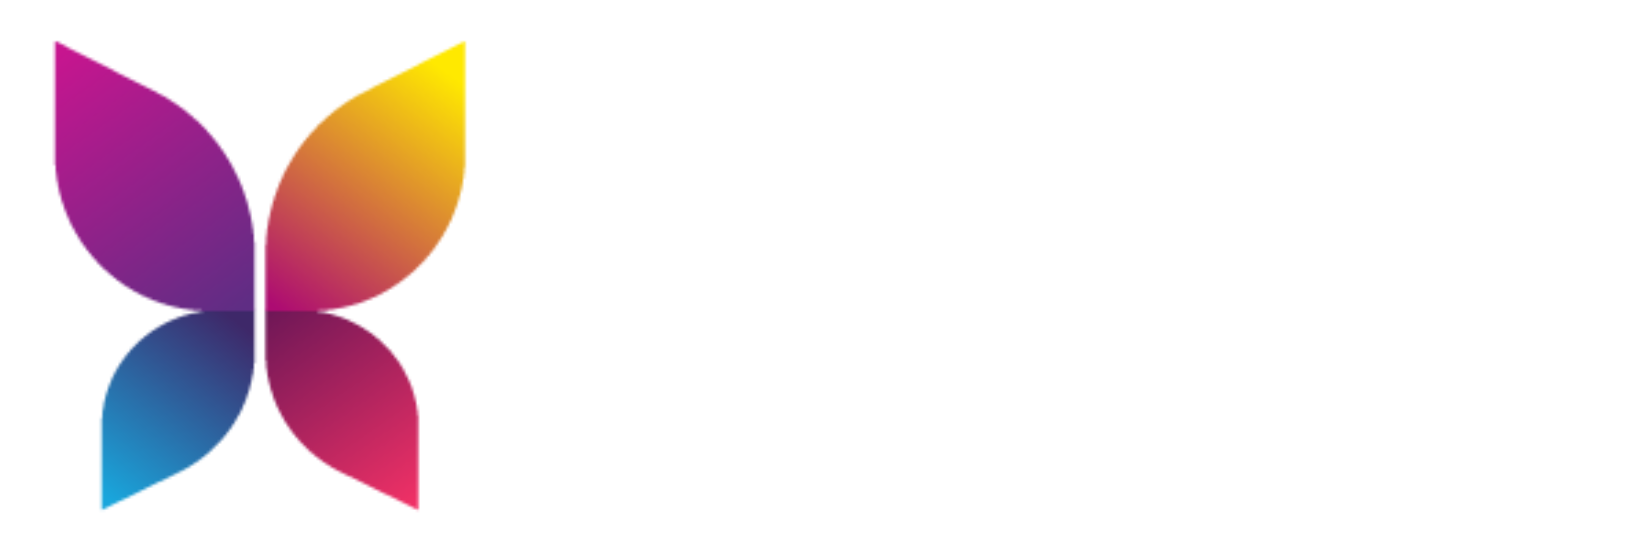 Logo Fundacji Inspira - motyl w róznych kolorach: różowym, żółtym, niebieskim, czerwoym. Obok napis INSPIRA białą czcionką